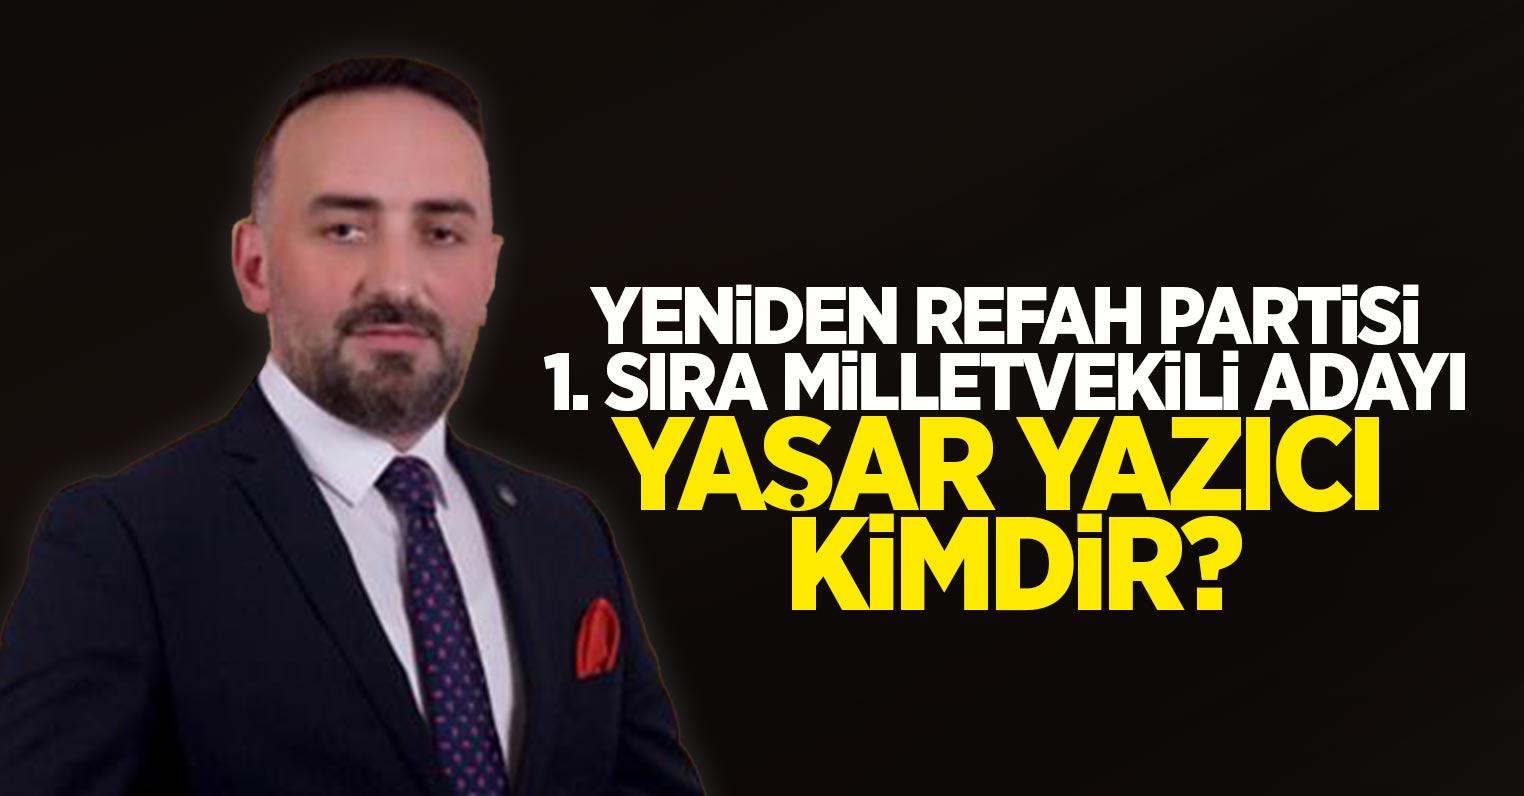 Yeniden Refah Partisi 1. Sıra milletvekili adayı Yaşar Yazıcı Kimdir?